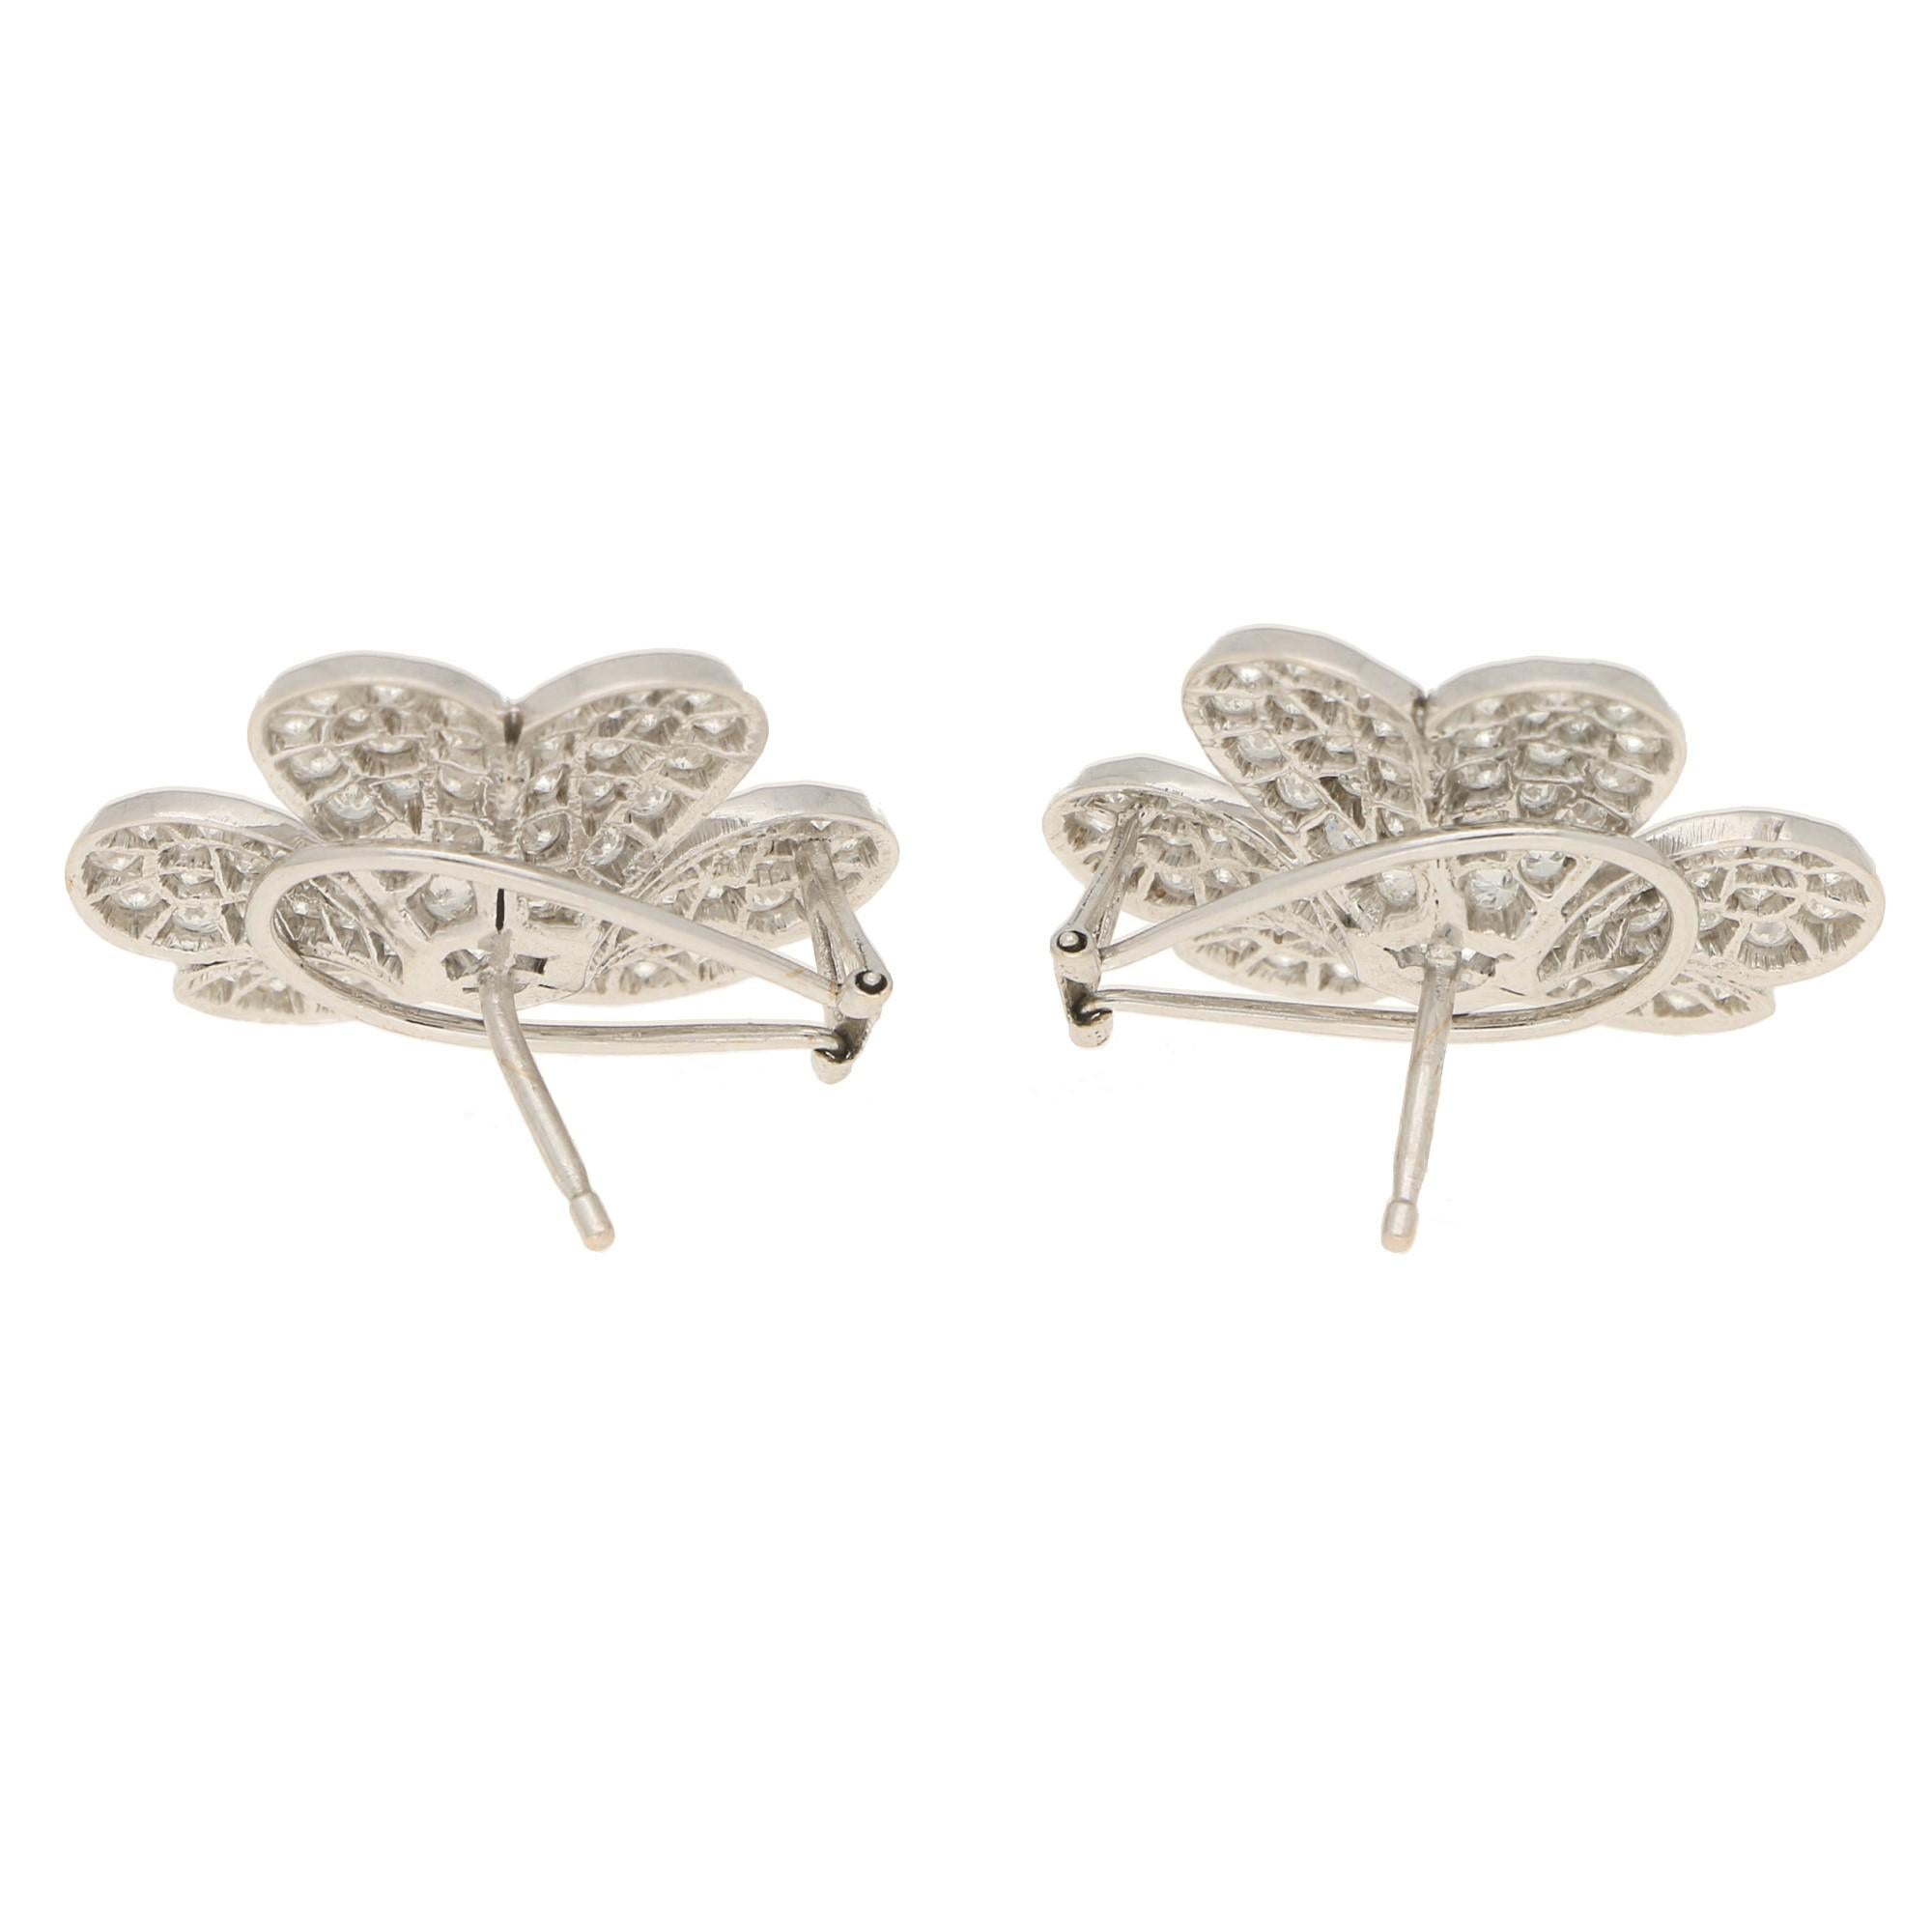 Round Cut Diamond Clover Earrings Set in 18k White Gold 